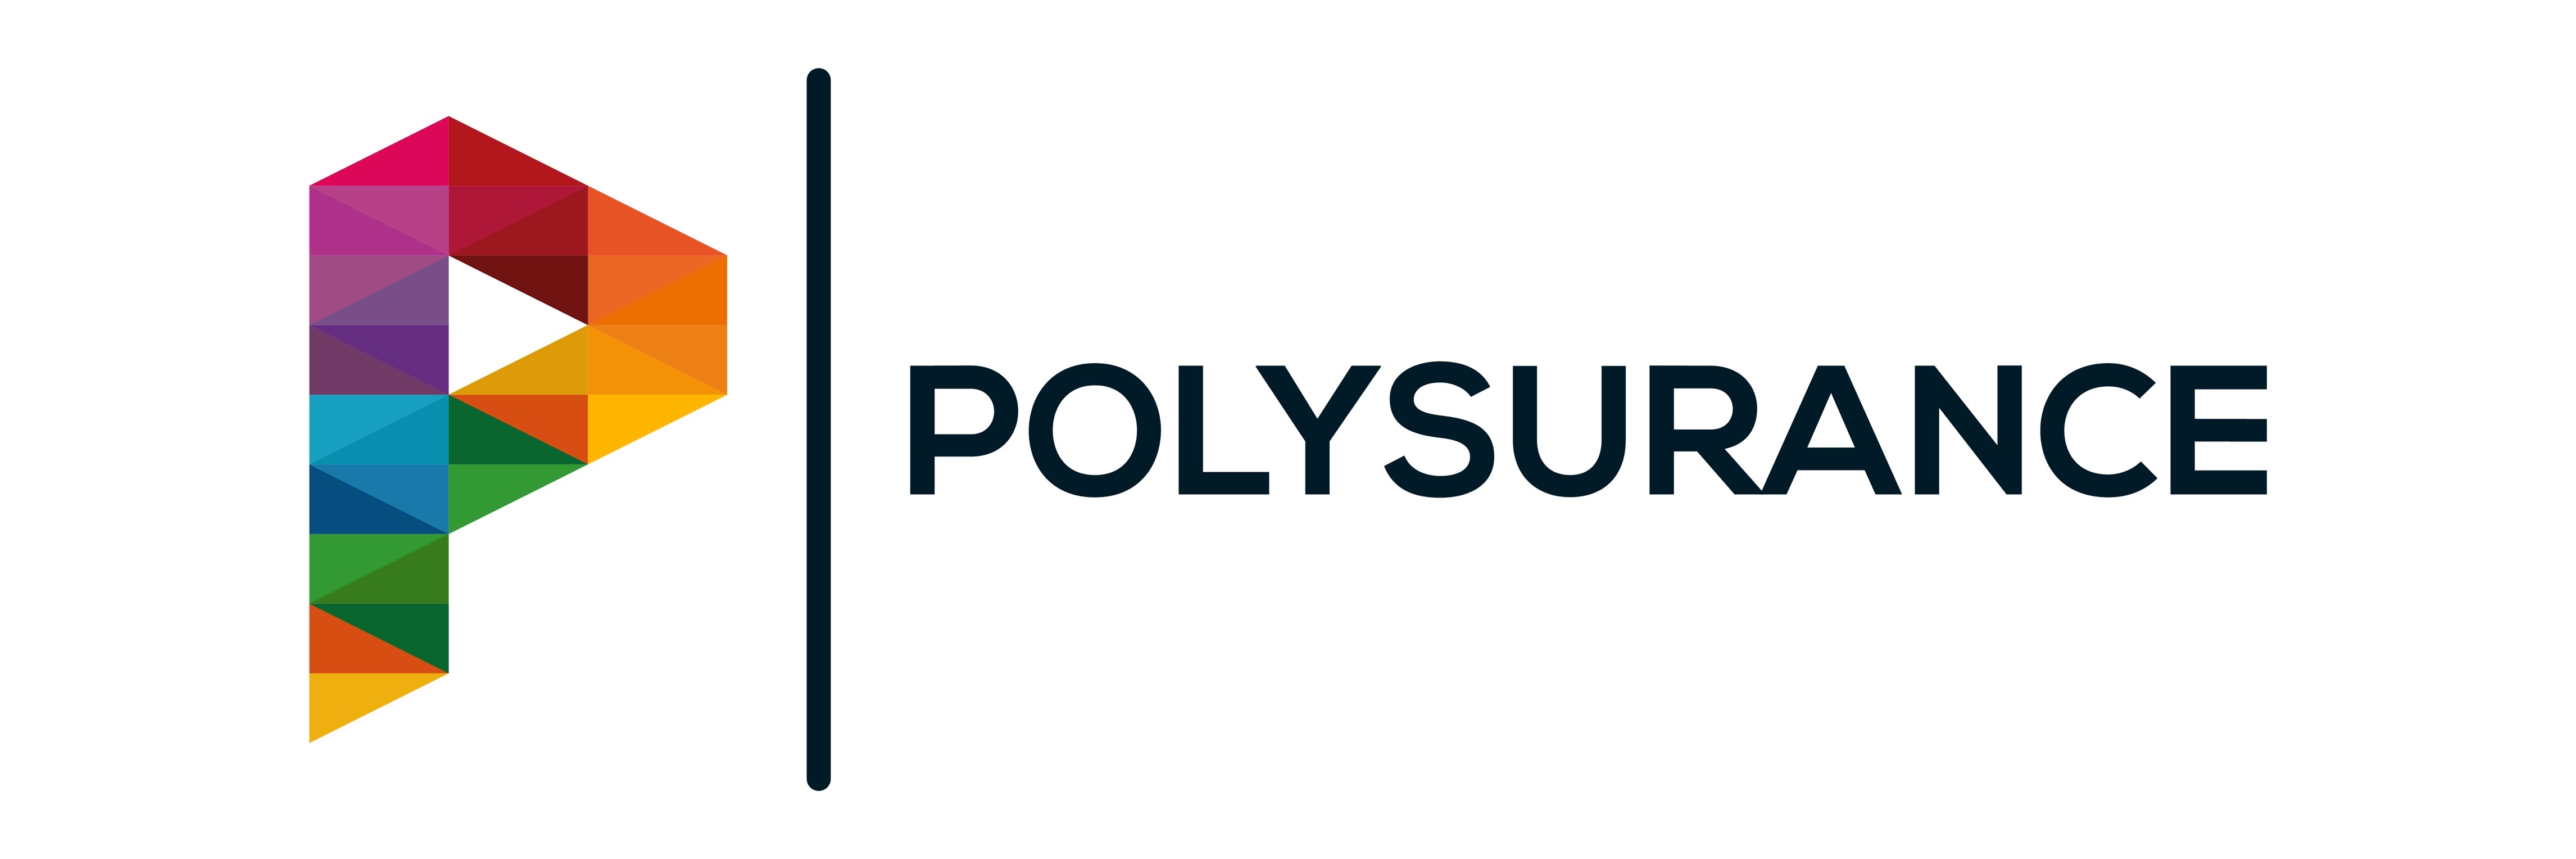 polysurance_full_white